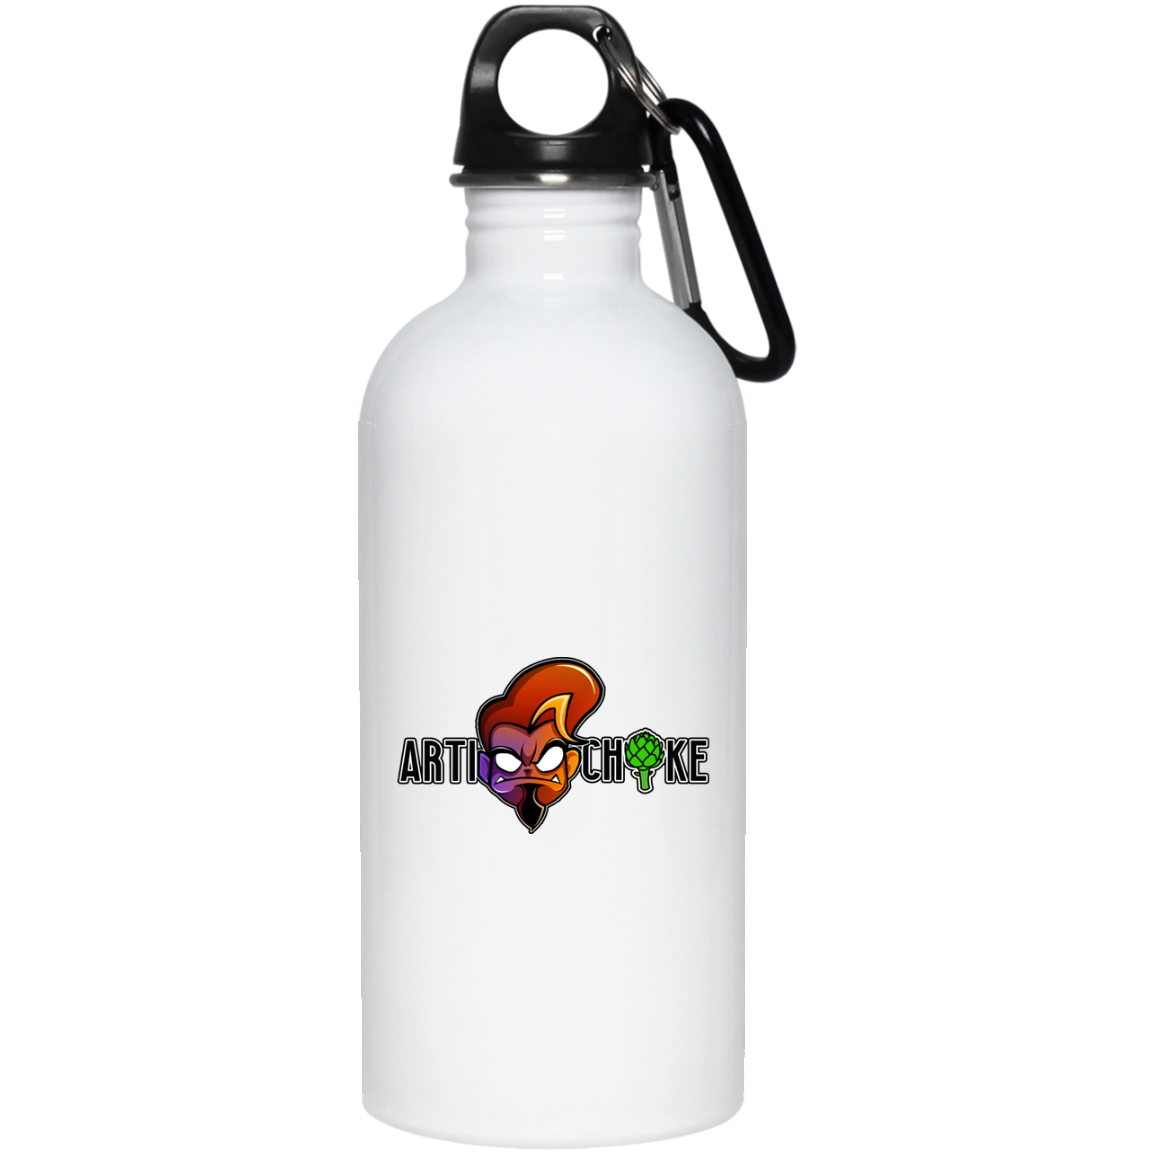 Custom design #1. 20 oz. Stainless Steel Water Bottle